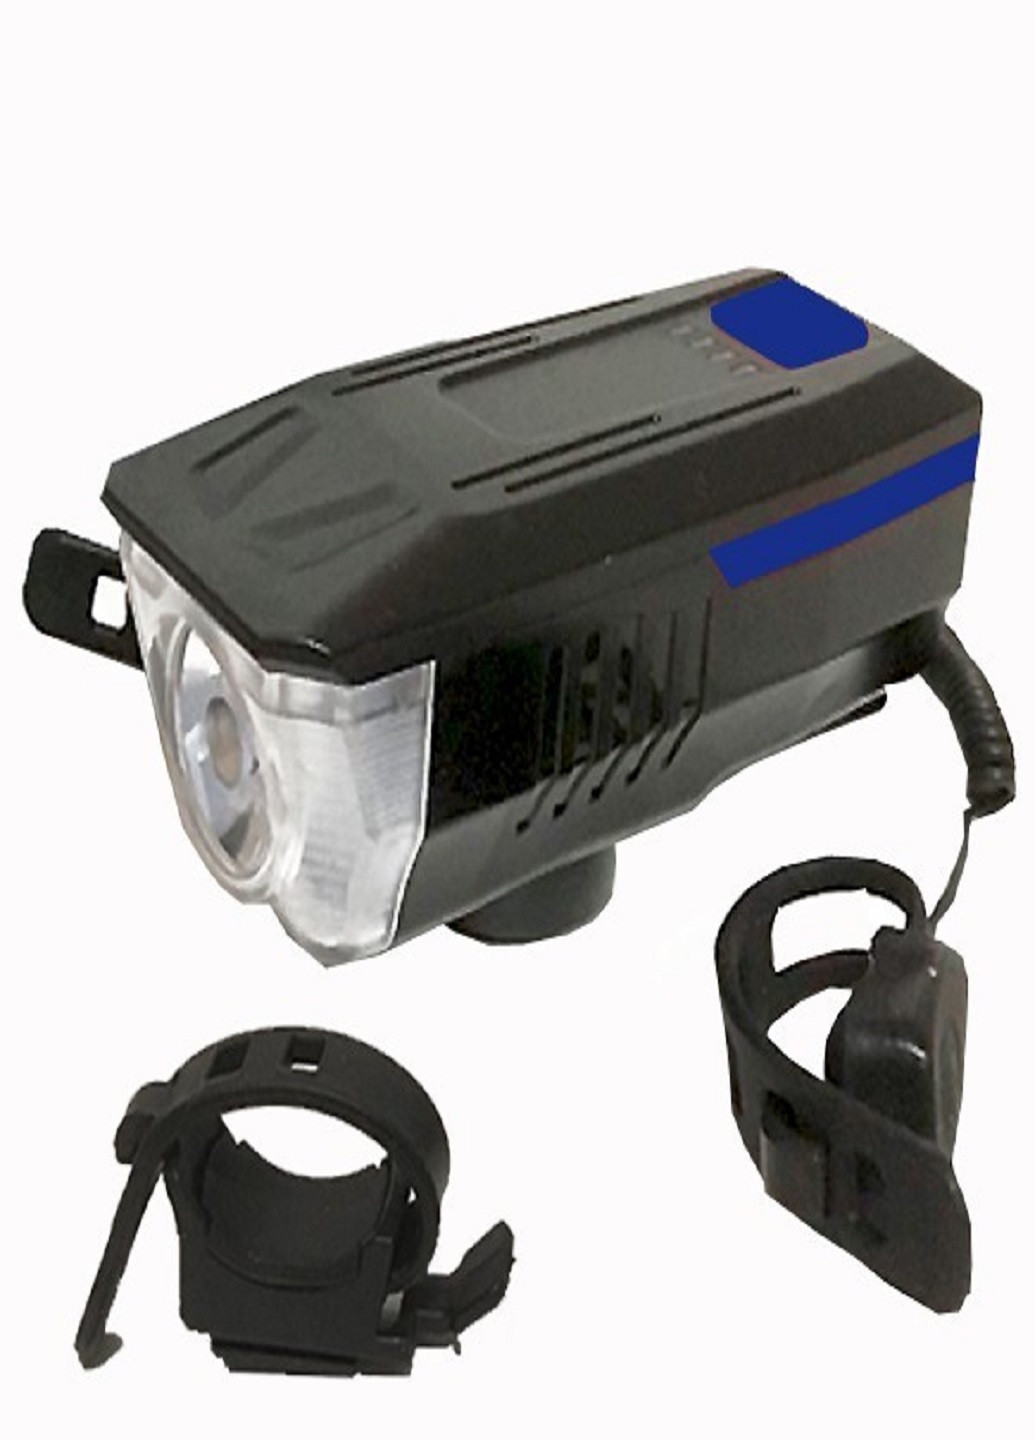 Универсальный аккумуляторный фонарь велосипедный LY-16 влагостойкий со звонком с креплением на руль Синий VTech (253499263)